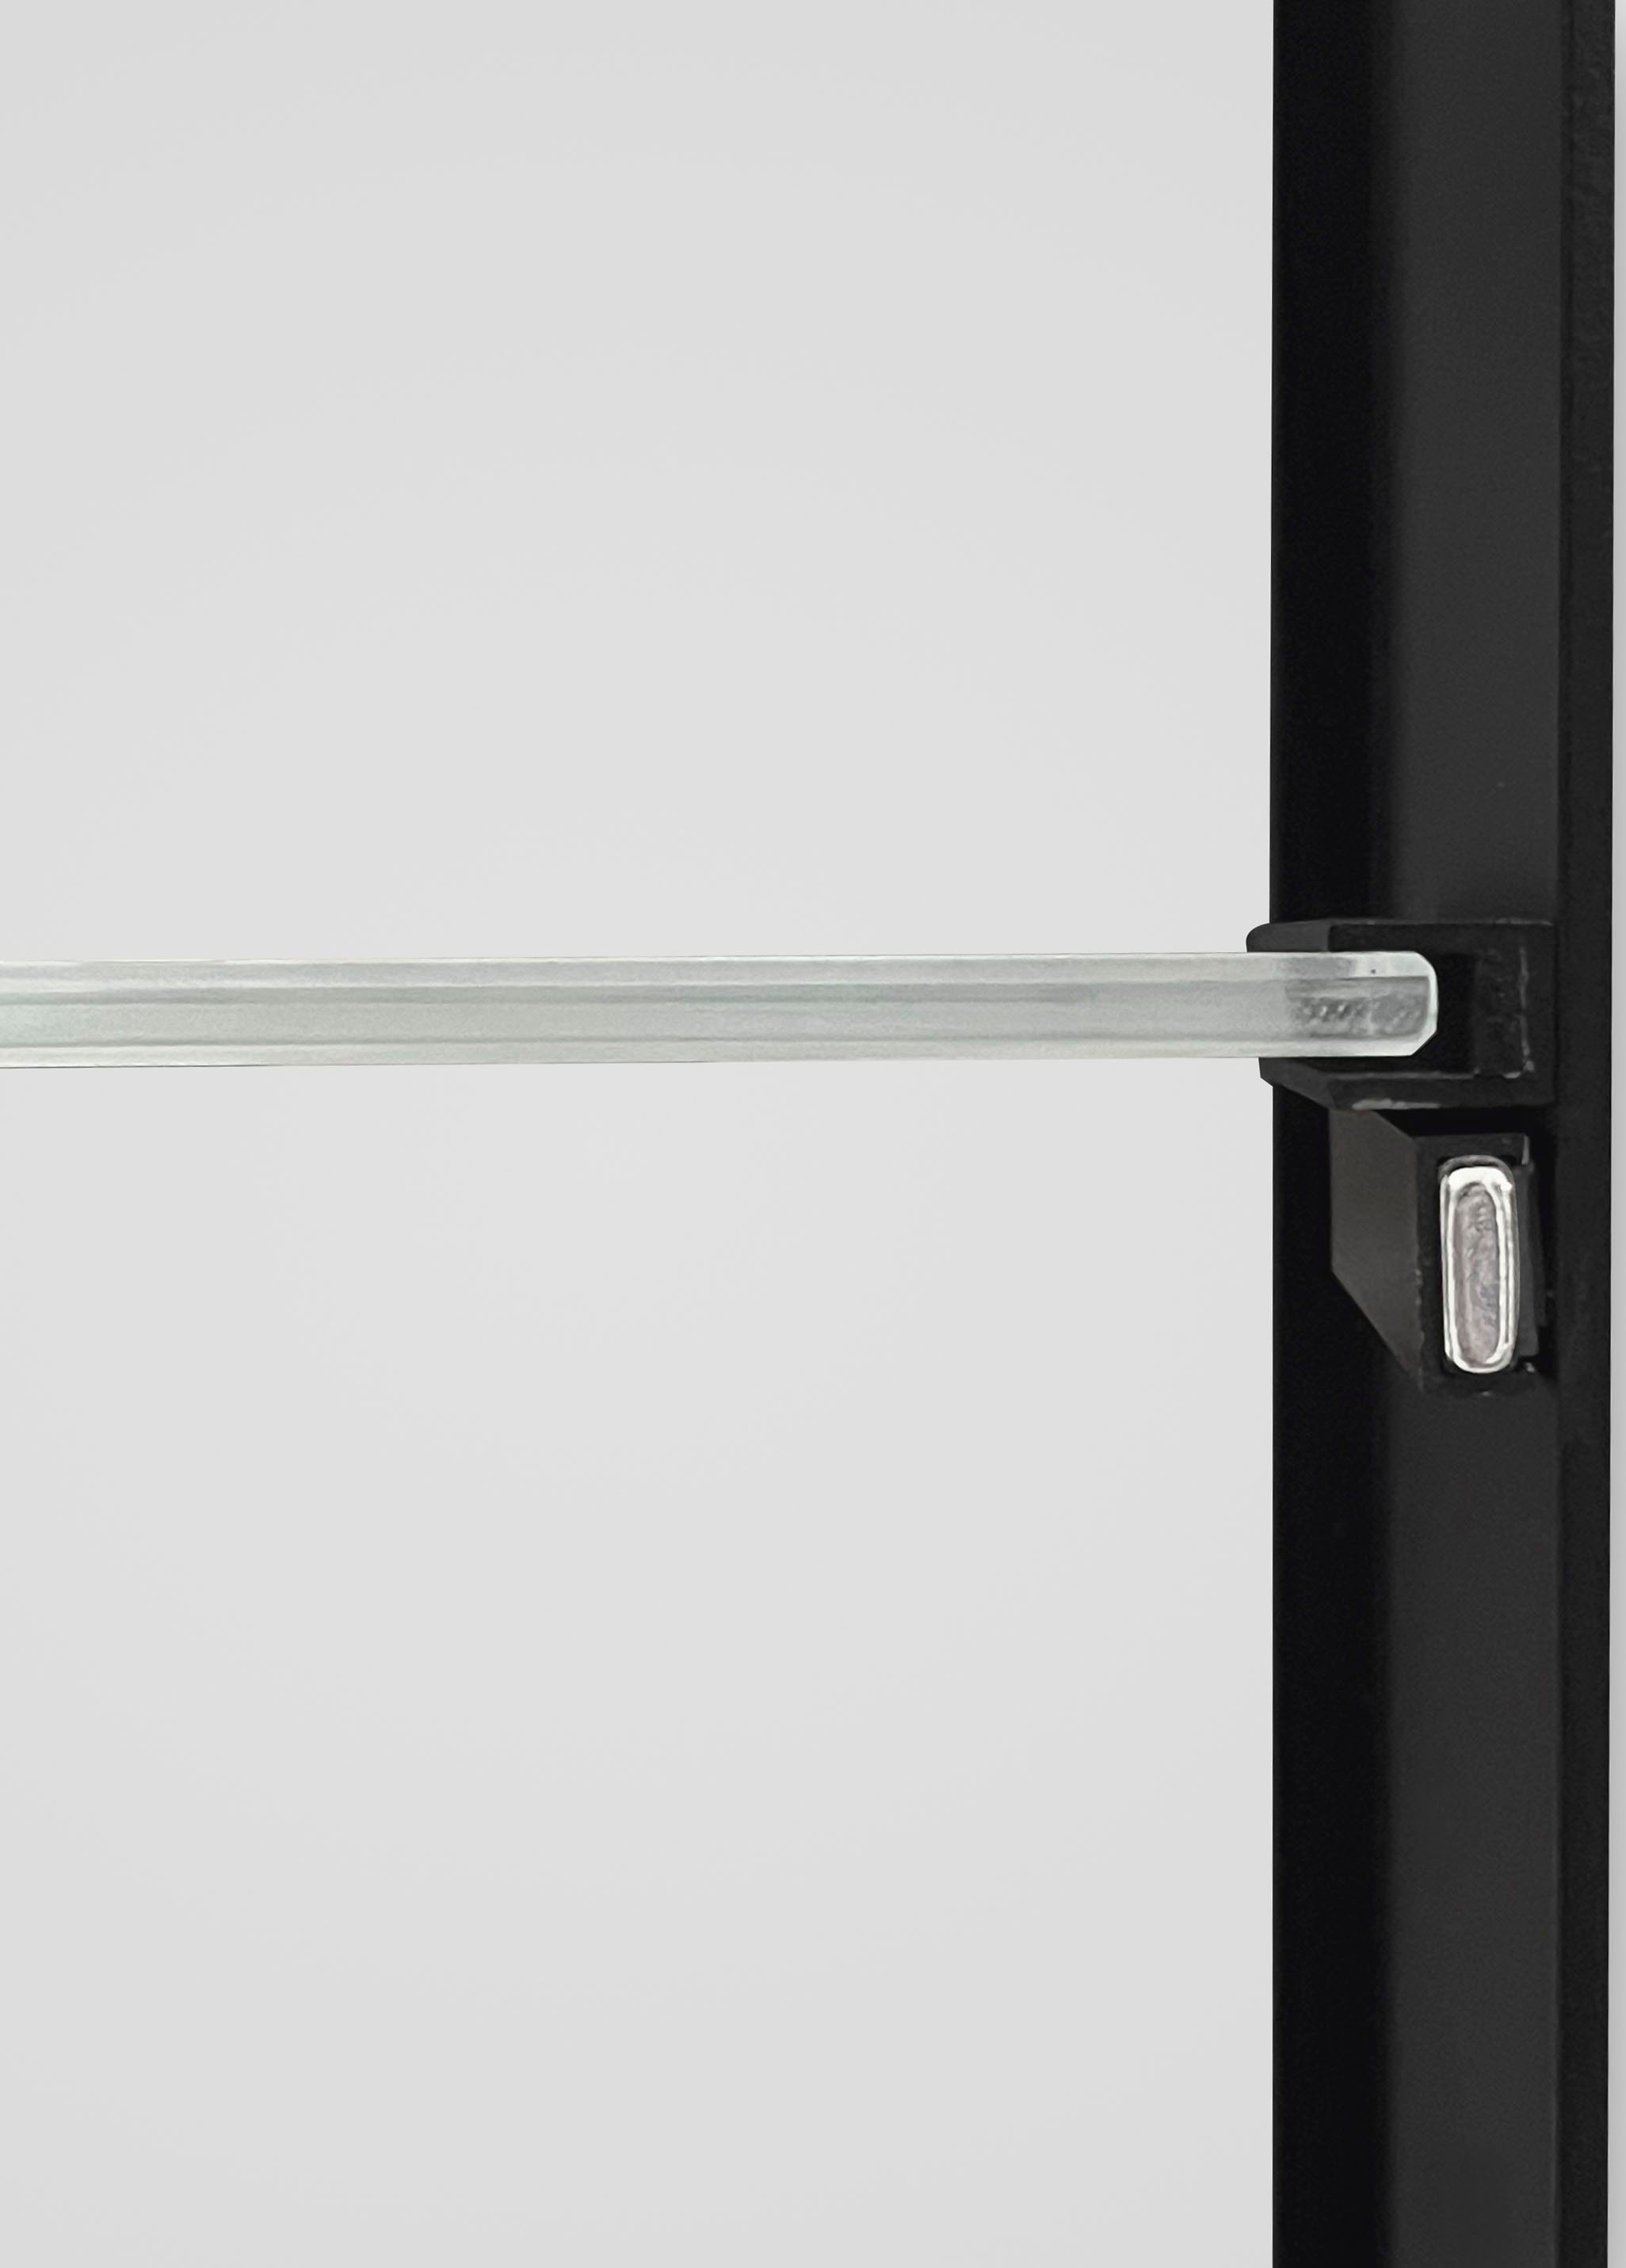 Talos Badezimmerspiegelschrank, oval, BxH: 40x60 cm, aus Alumunium und  Echtglas, IP24, schwarz OTTO Online Shop